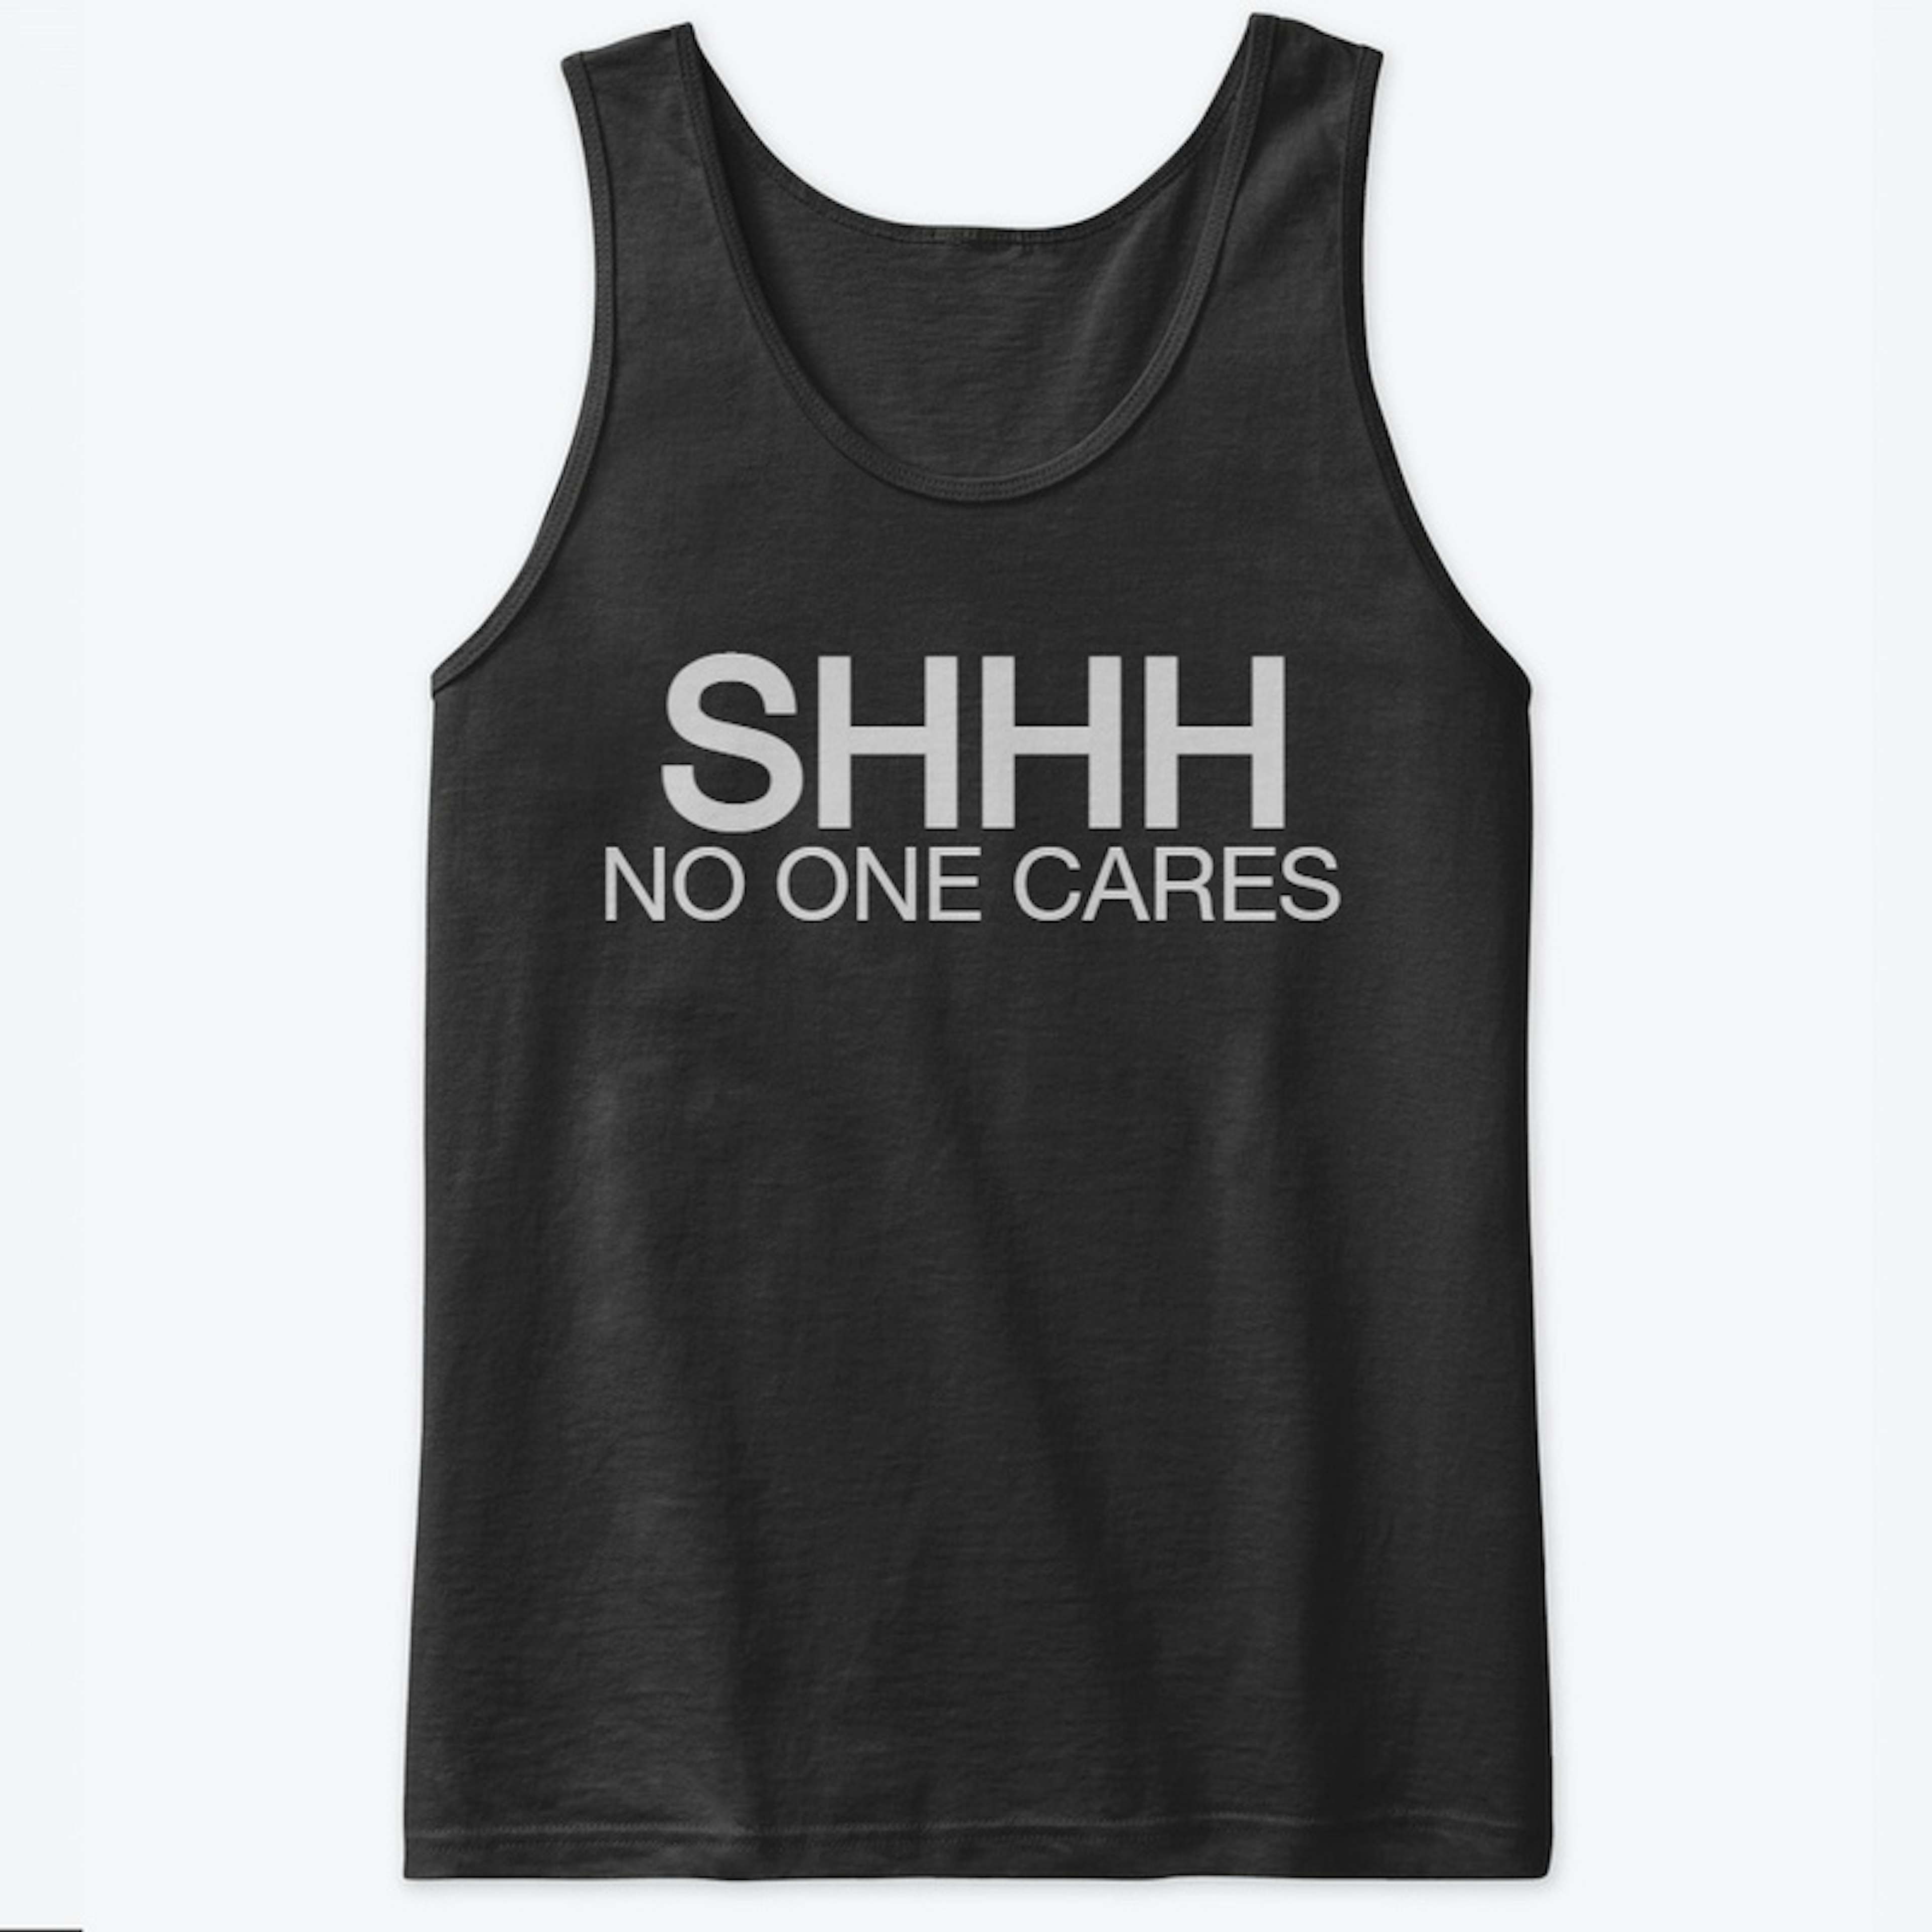 SHHHHH - NO One Cares